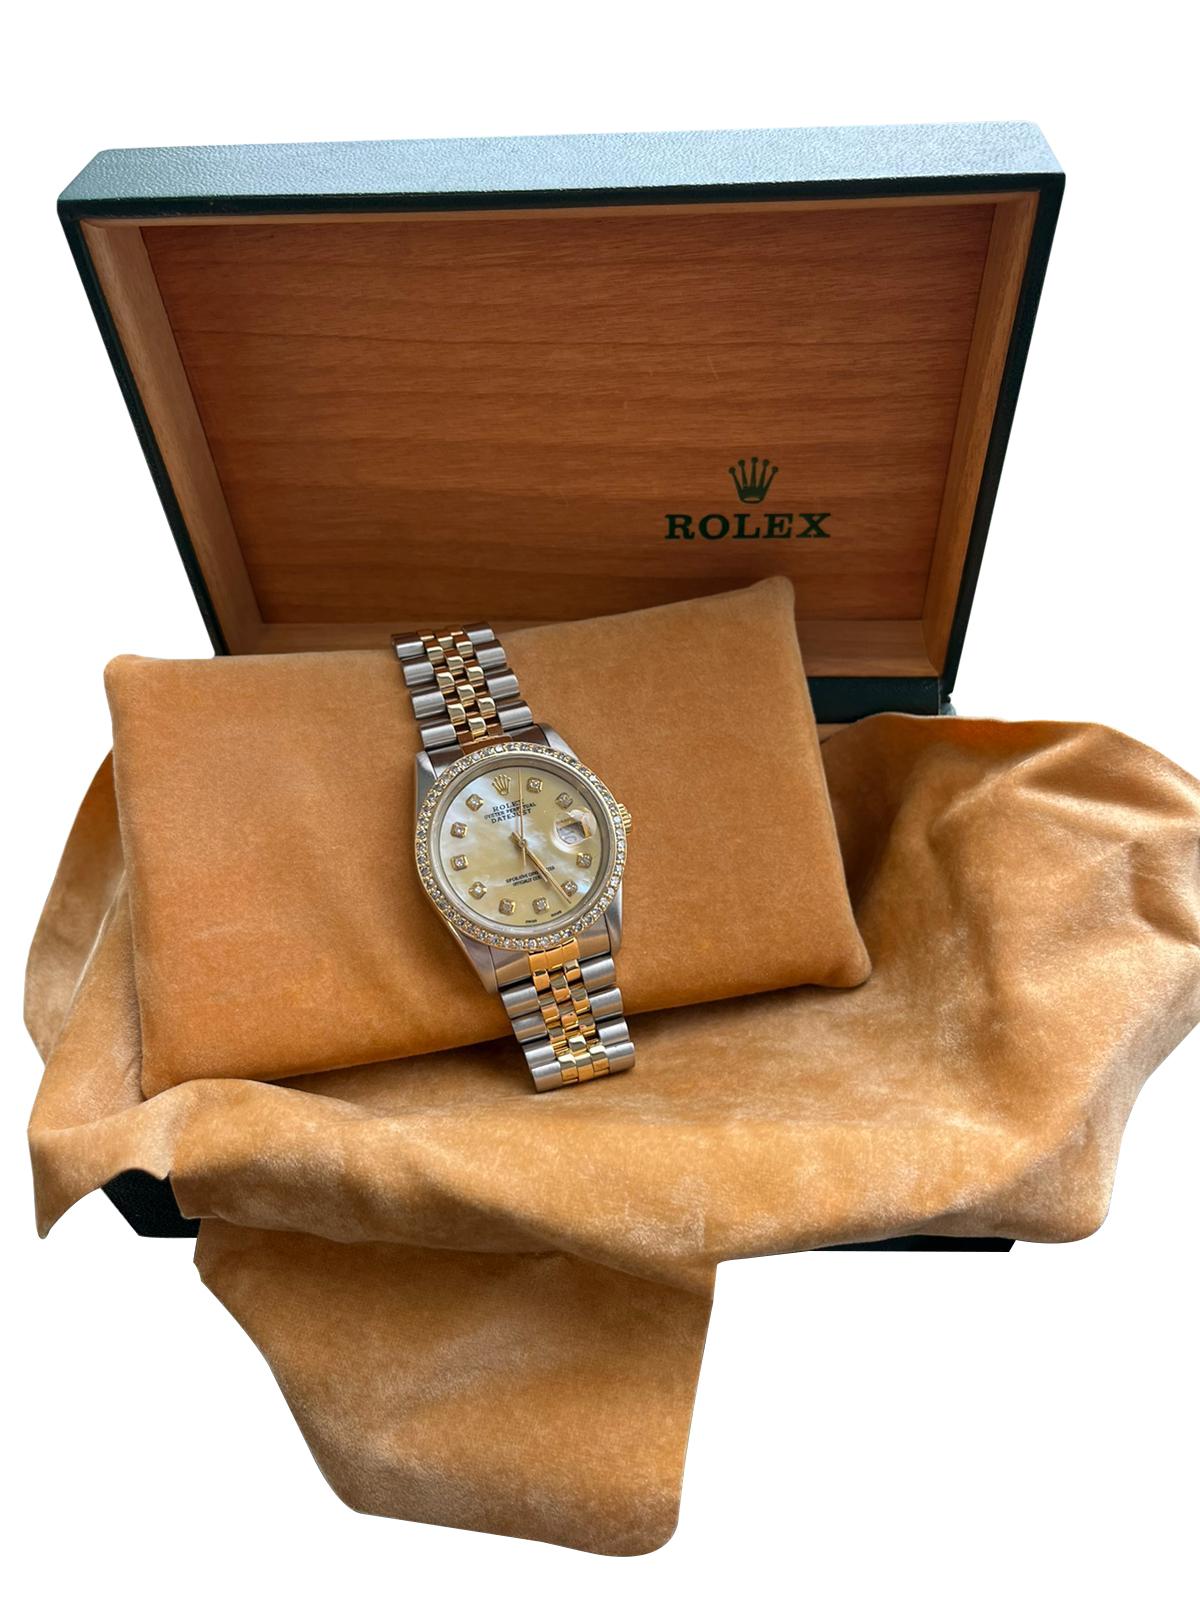 Rolex Datejust Steel Yellow Gold Mother of Pearl Diamond Mens Watch 16233. Mouvement automatique à remontage automatique, officiellement certifié chronomètre. Boîtier en acier inoxydable de 36.0 mm de diamètre. Logo Rolex sur une couronne. Cadran à